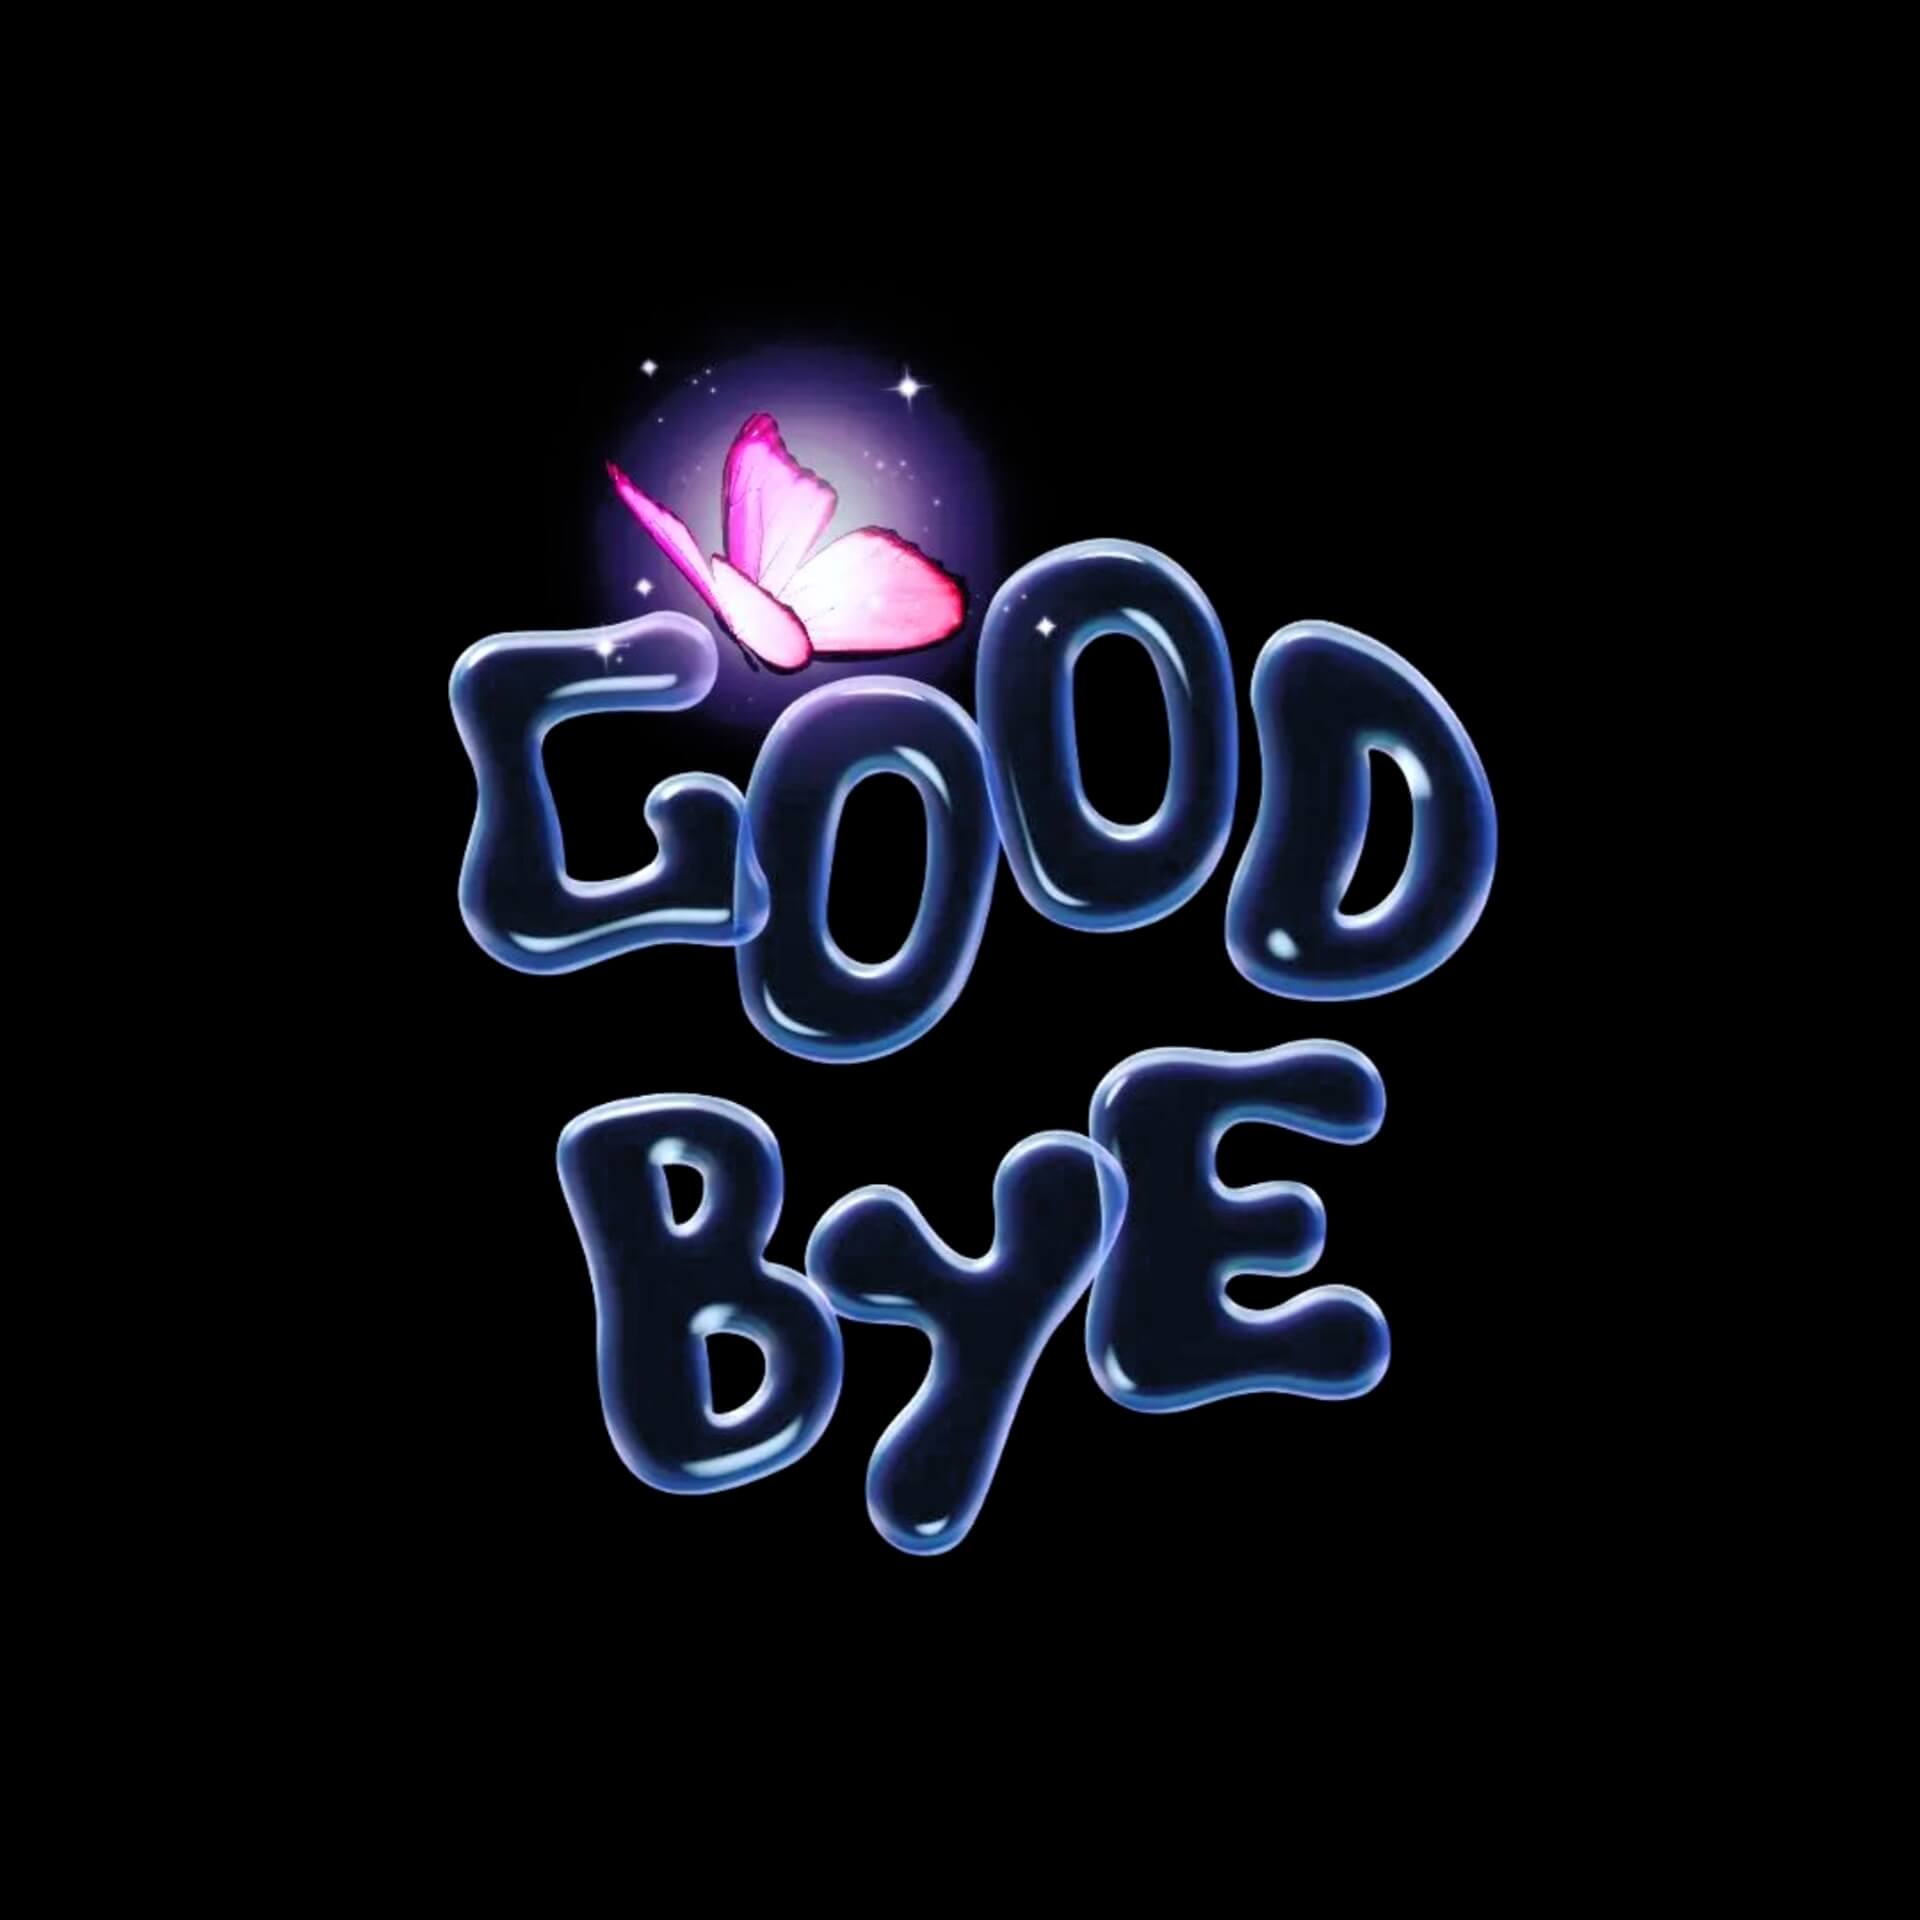 Good bye WhatsApp Dp